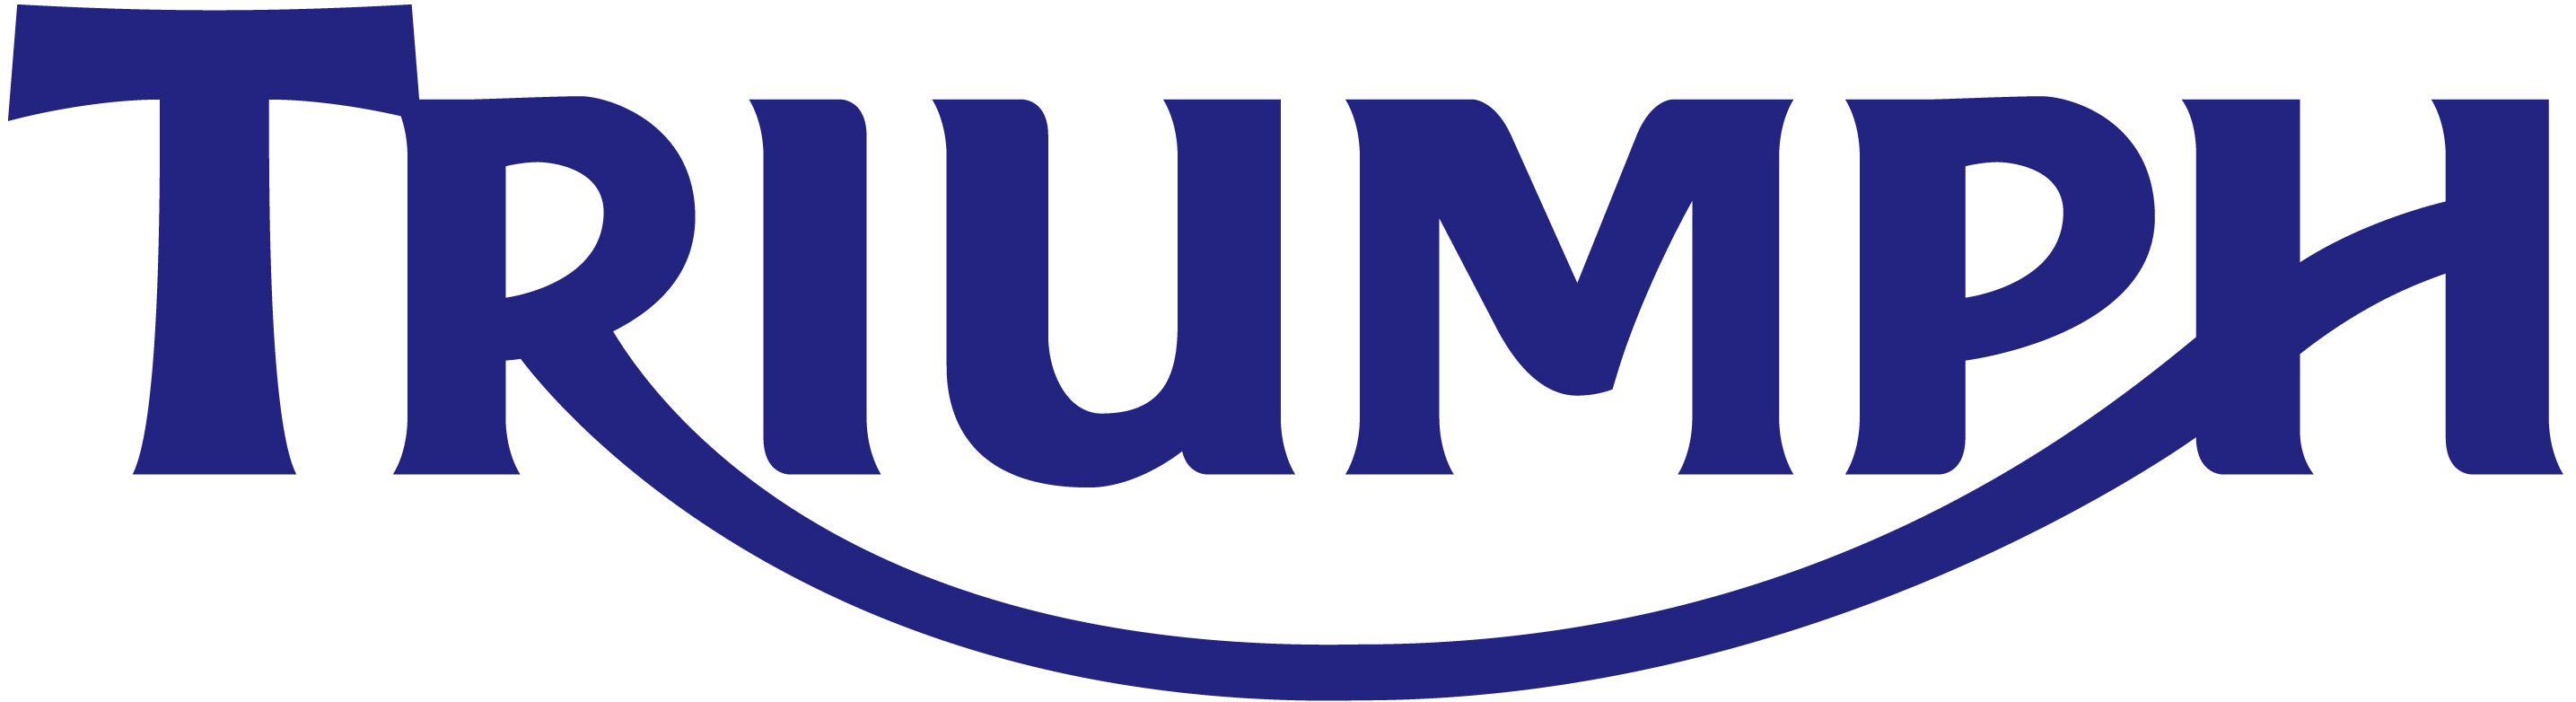 Triumph Automotive Logo - Triumph Motorcycles. Logo Design. Triumph motorcycles, Triumph